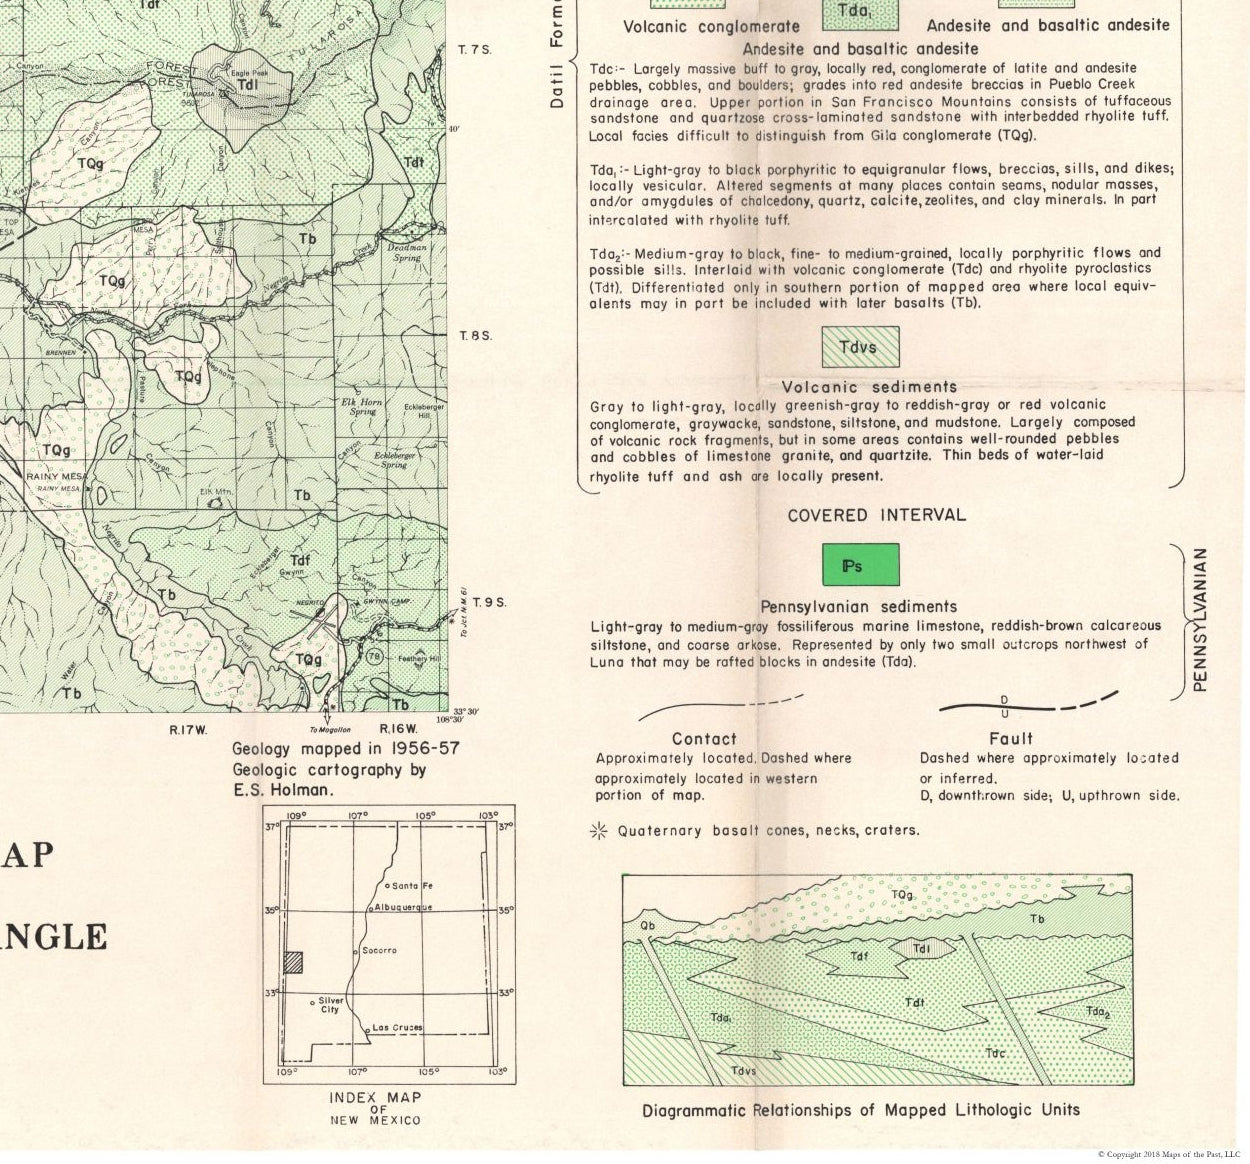 Historic Mine Map - Reserve Quad New Mexico Mines - Willard 1956 - 24.69 x 23 - Vintage Wall Art